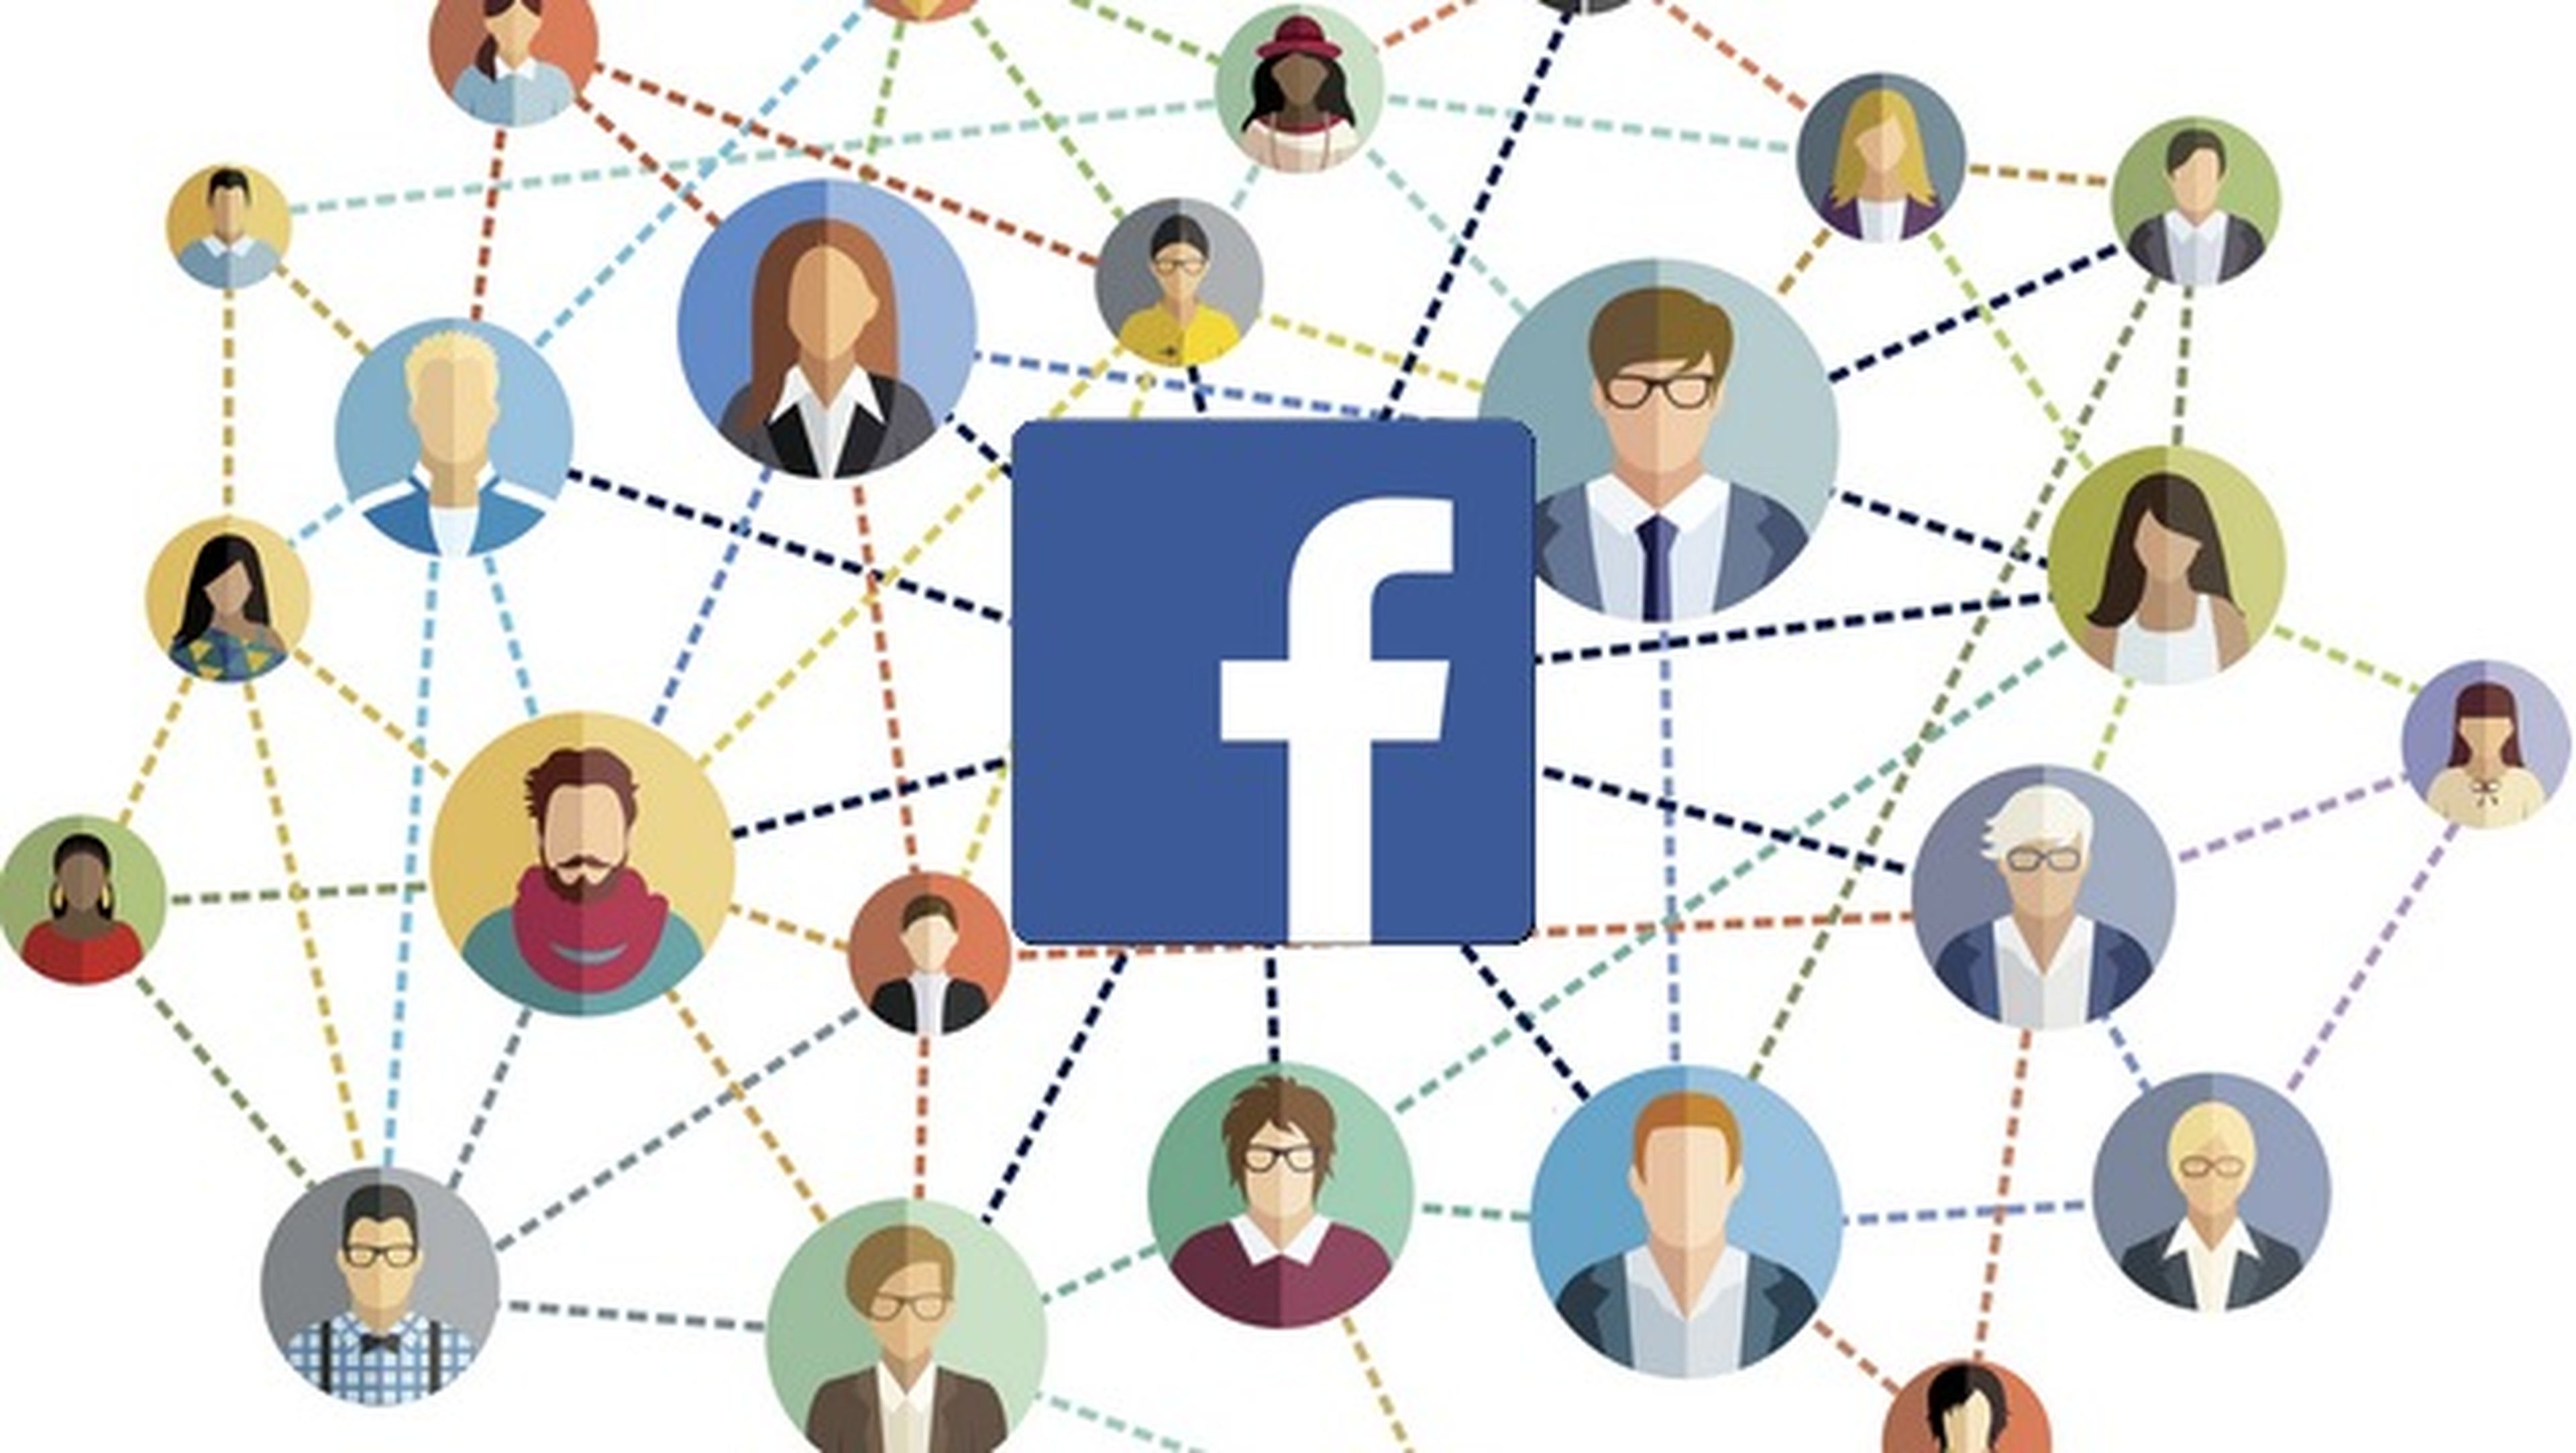 Las sugerencias de amistad de Facebook unieron a cientos de yihadistas